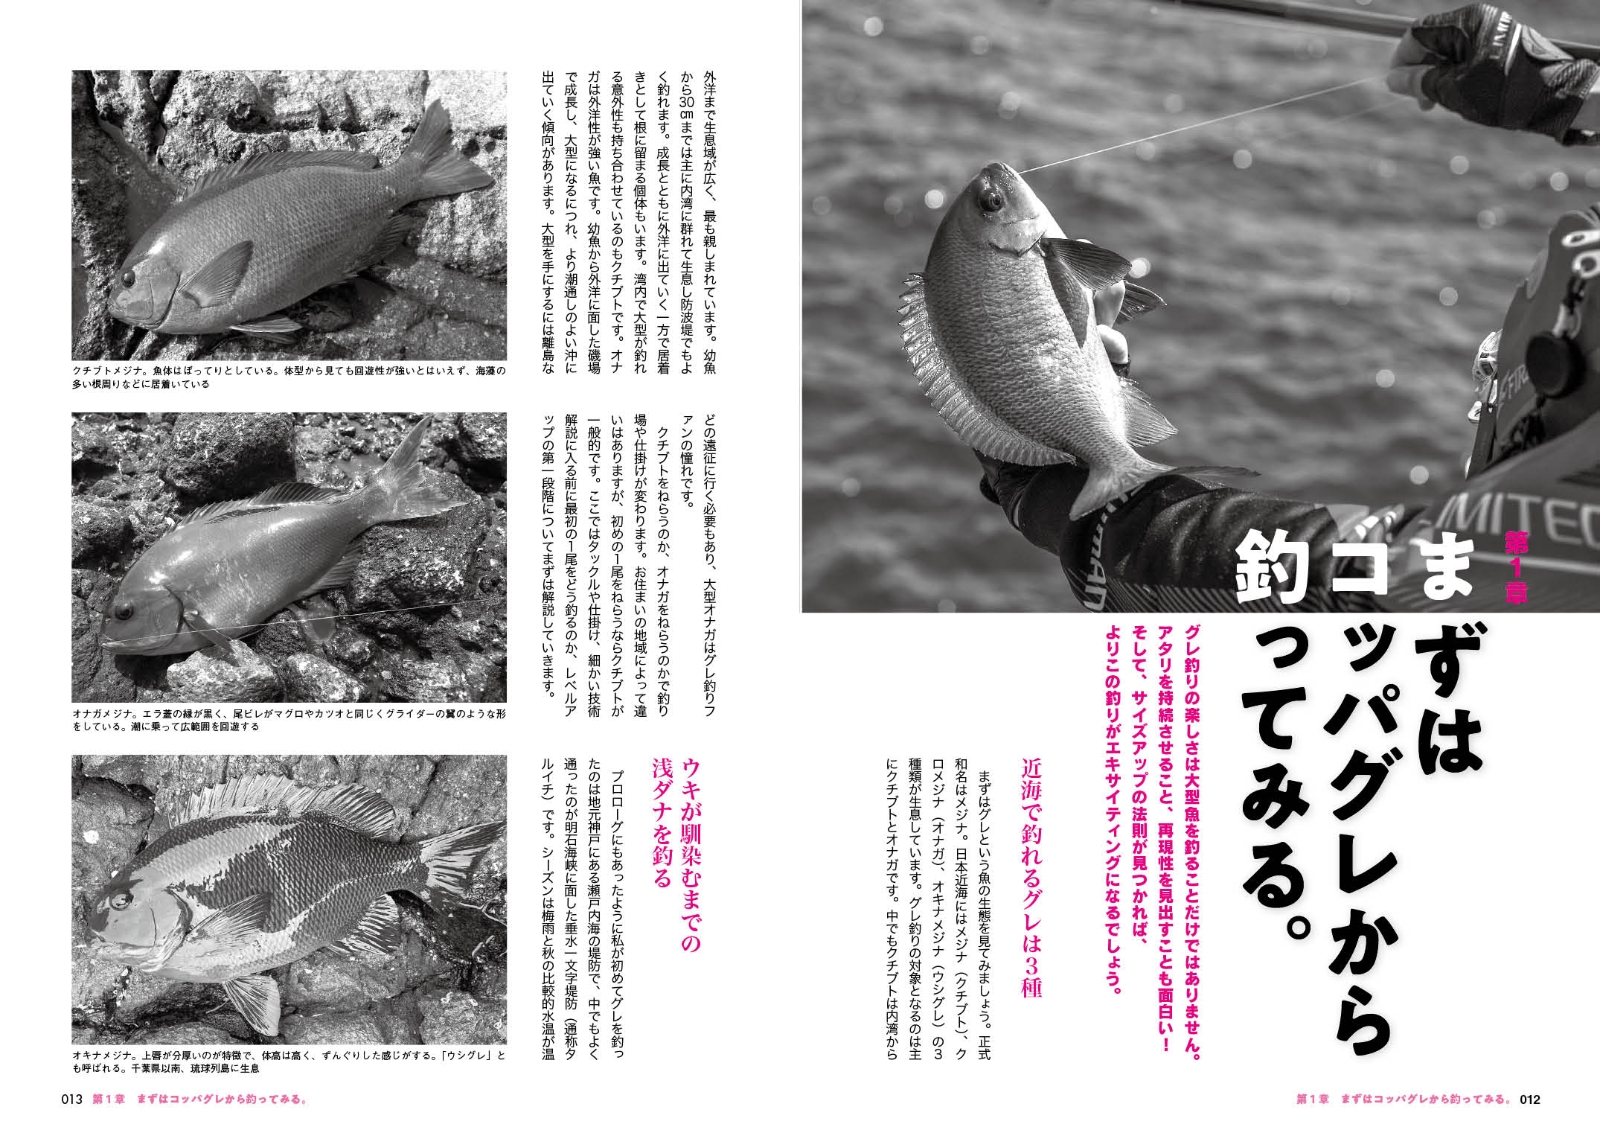 楽天ブックス 日本一グレを釣る男 シンプル を突き詰めれば磯釣りは 進化 する 友松 信彦 本